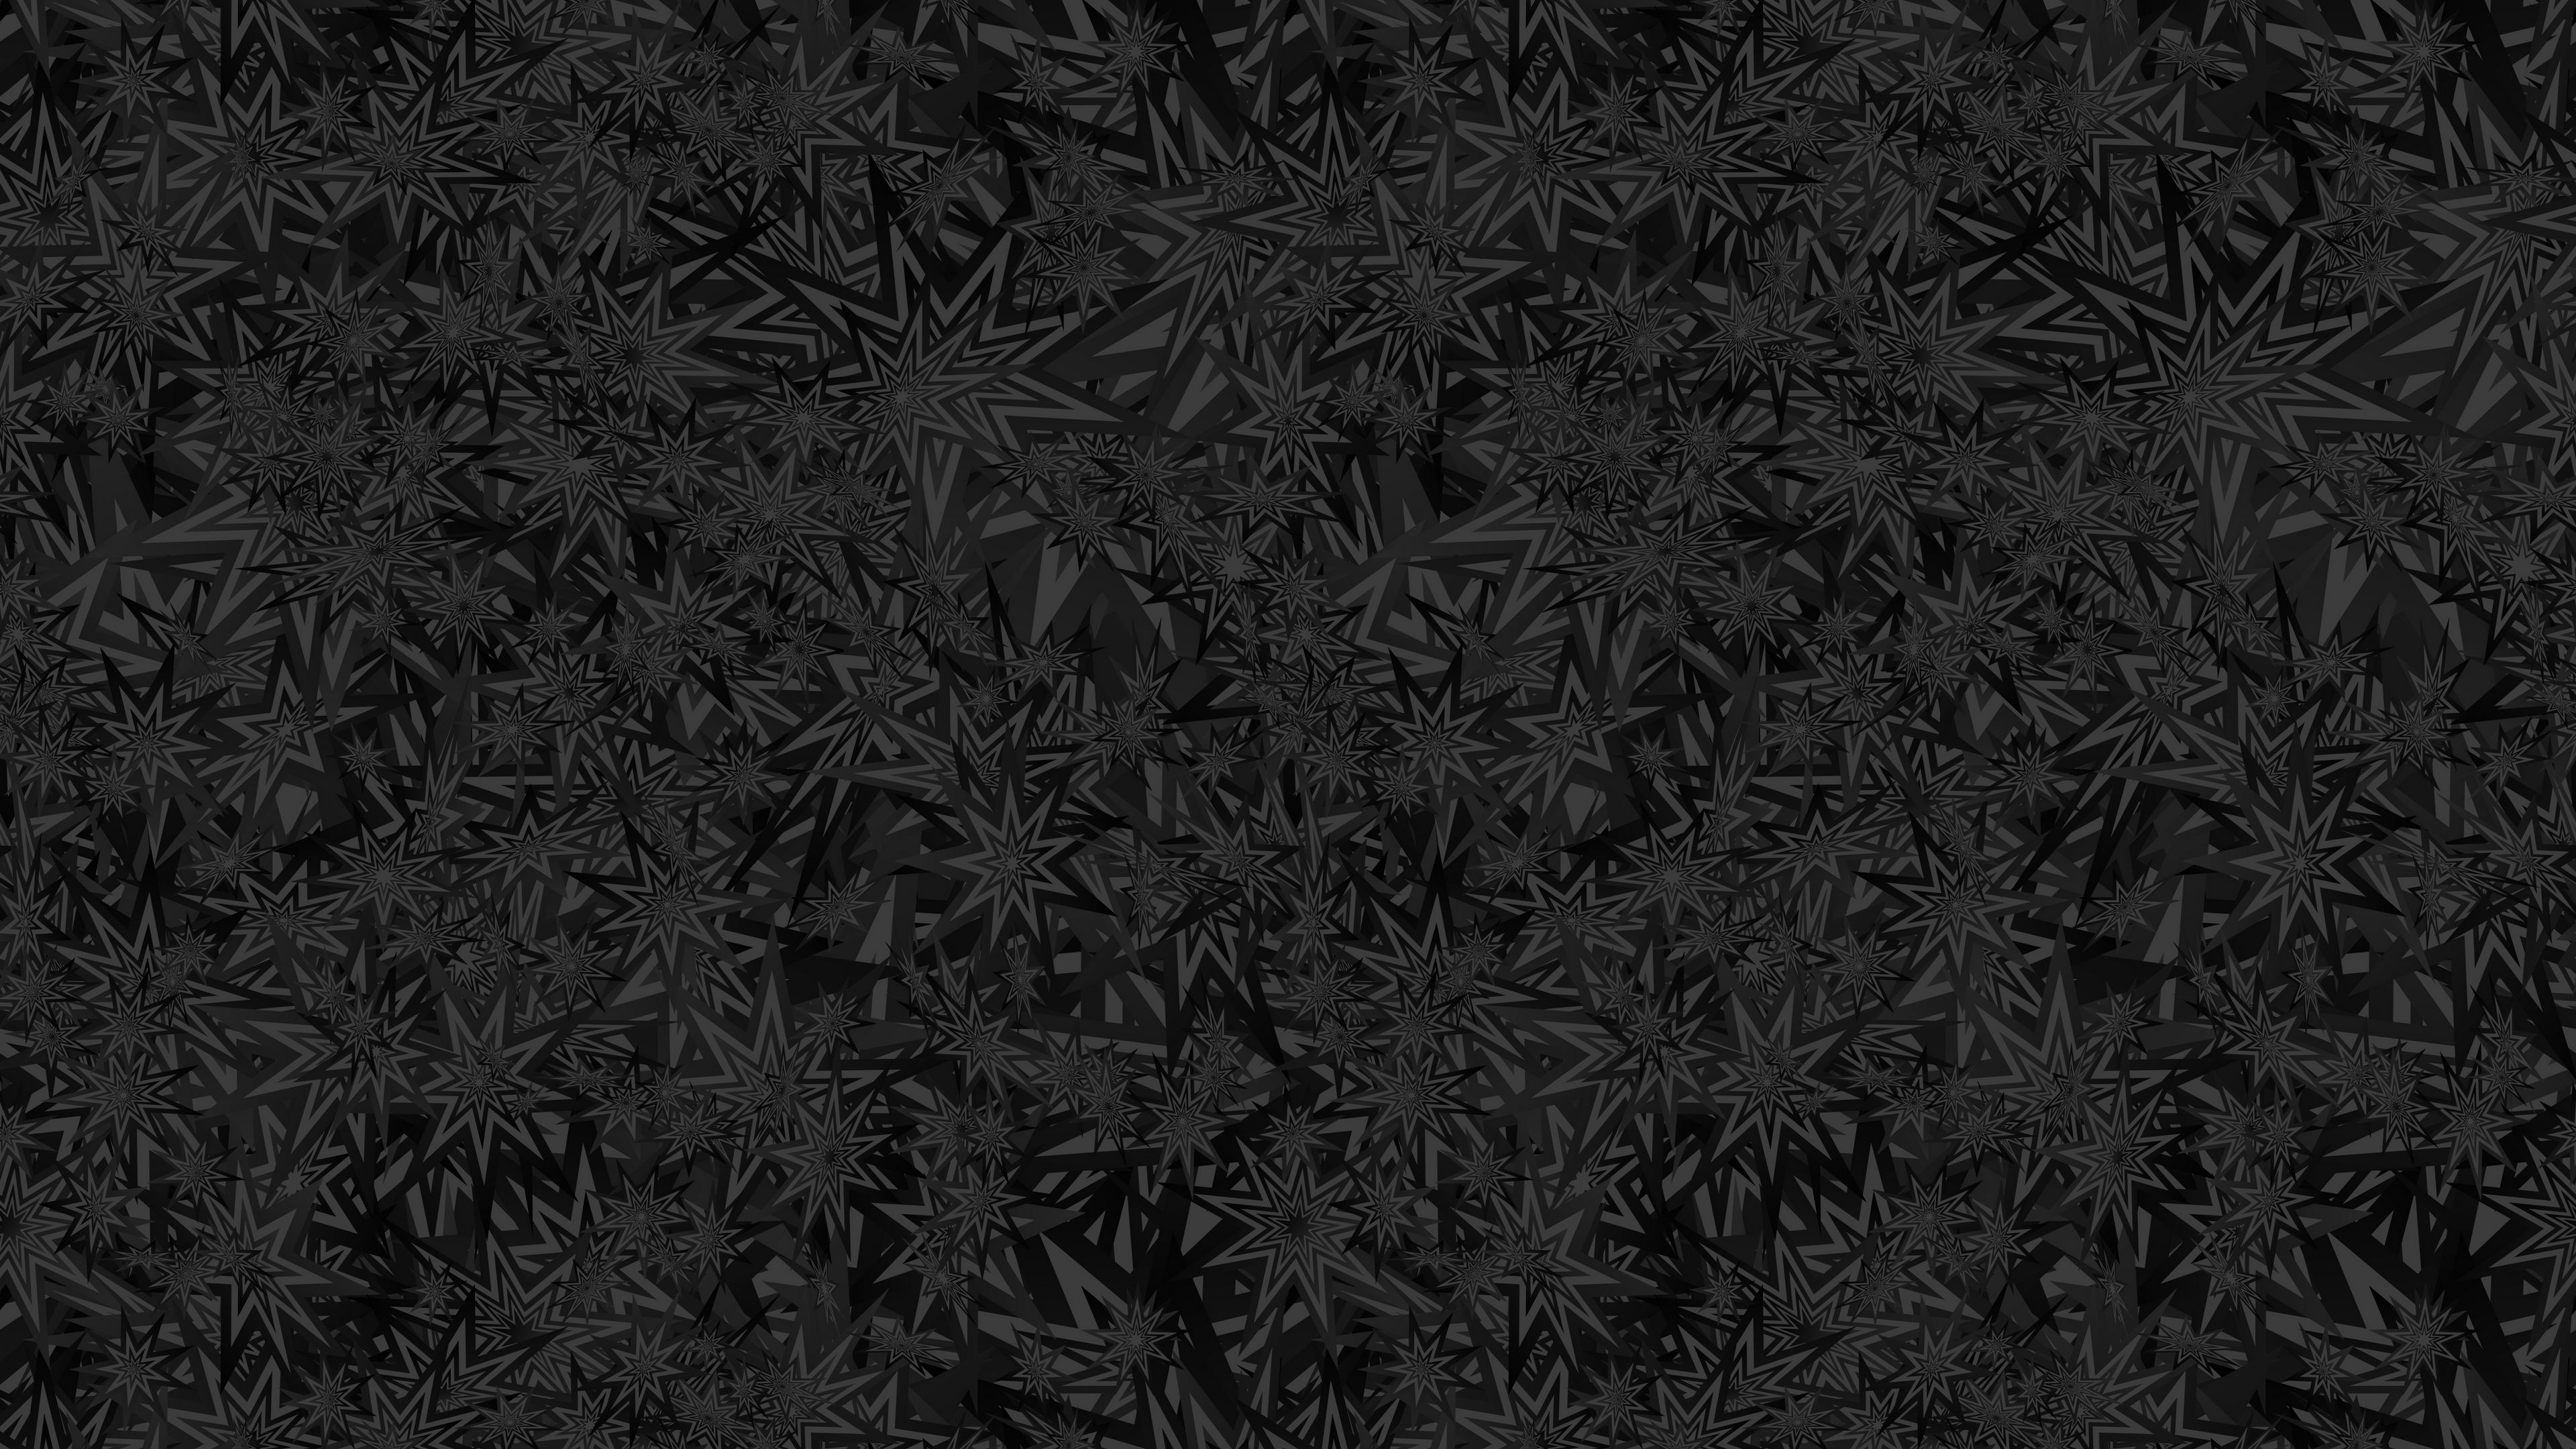 Download wallpaper 3840x2160 stars, patterns, black, texture, ornament 4k  uhd 16:9 hd background